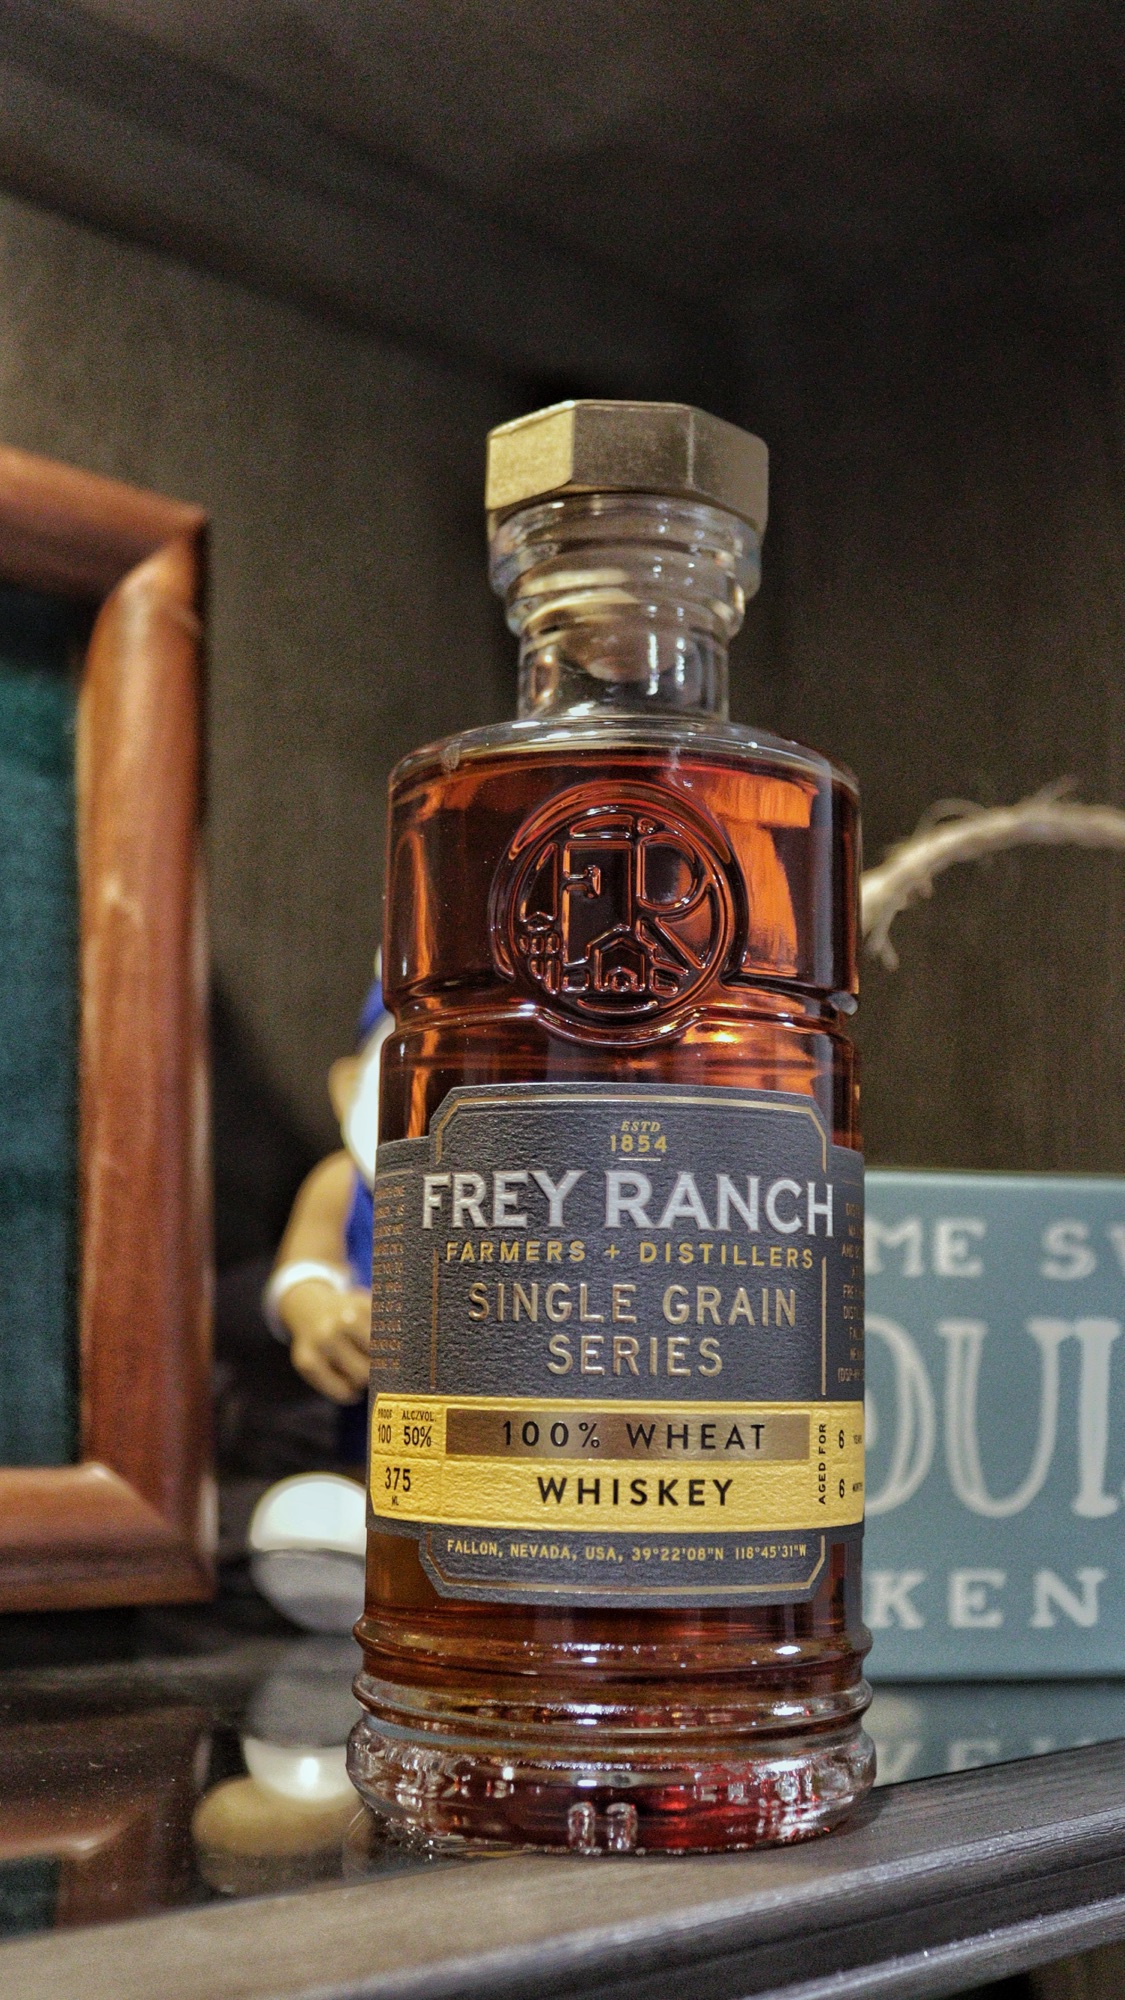 Frey Ranch 100% Wheat Whiskey Taken by the Bourbon Lens